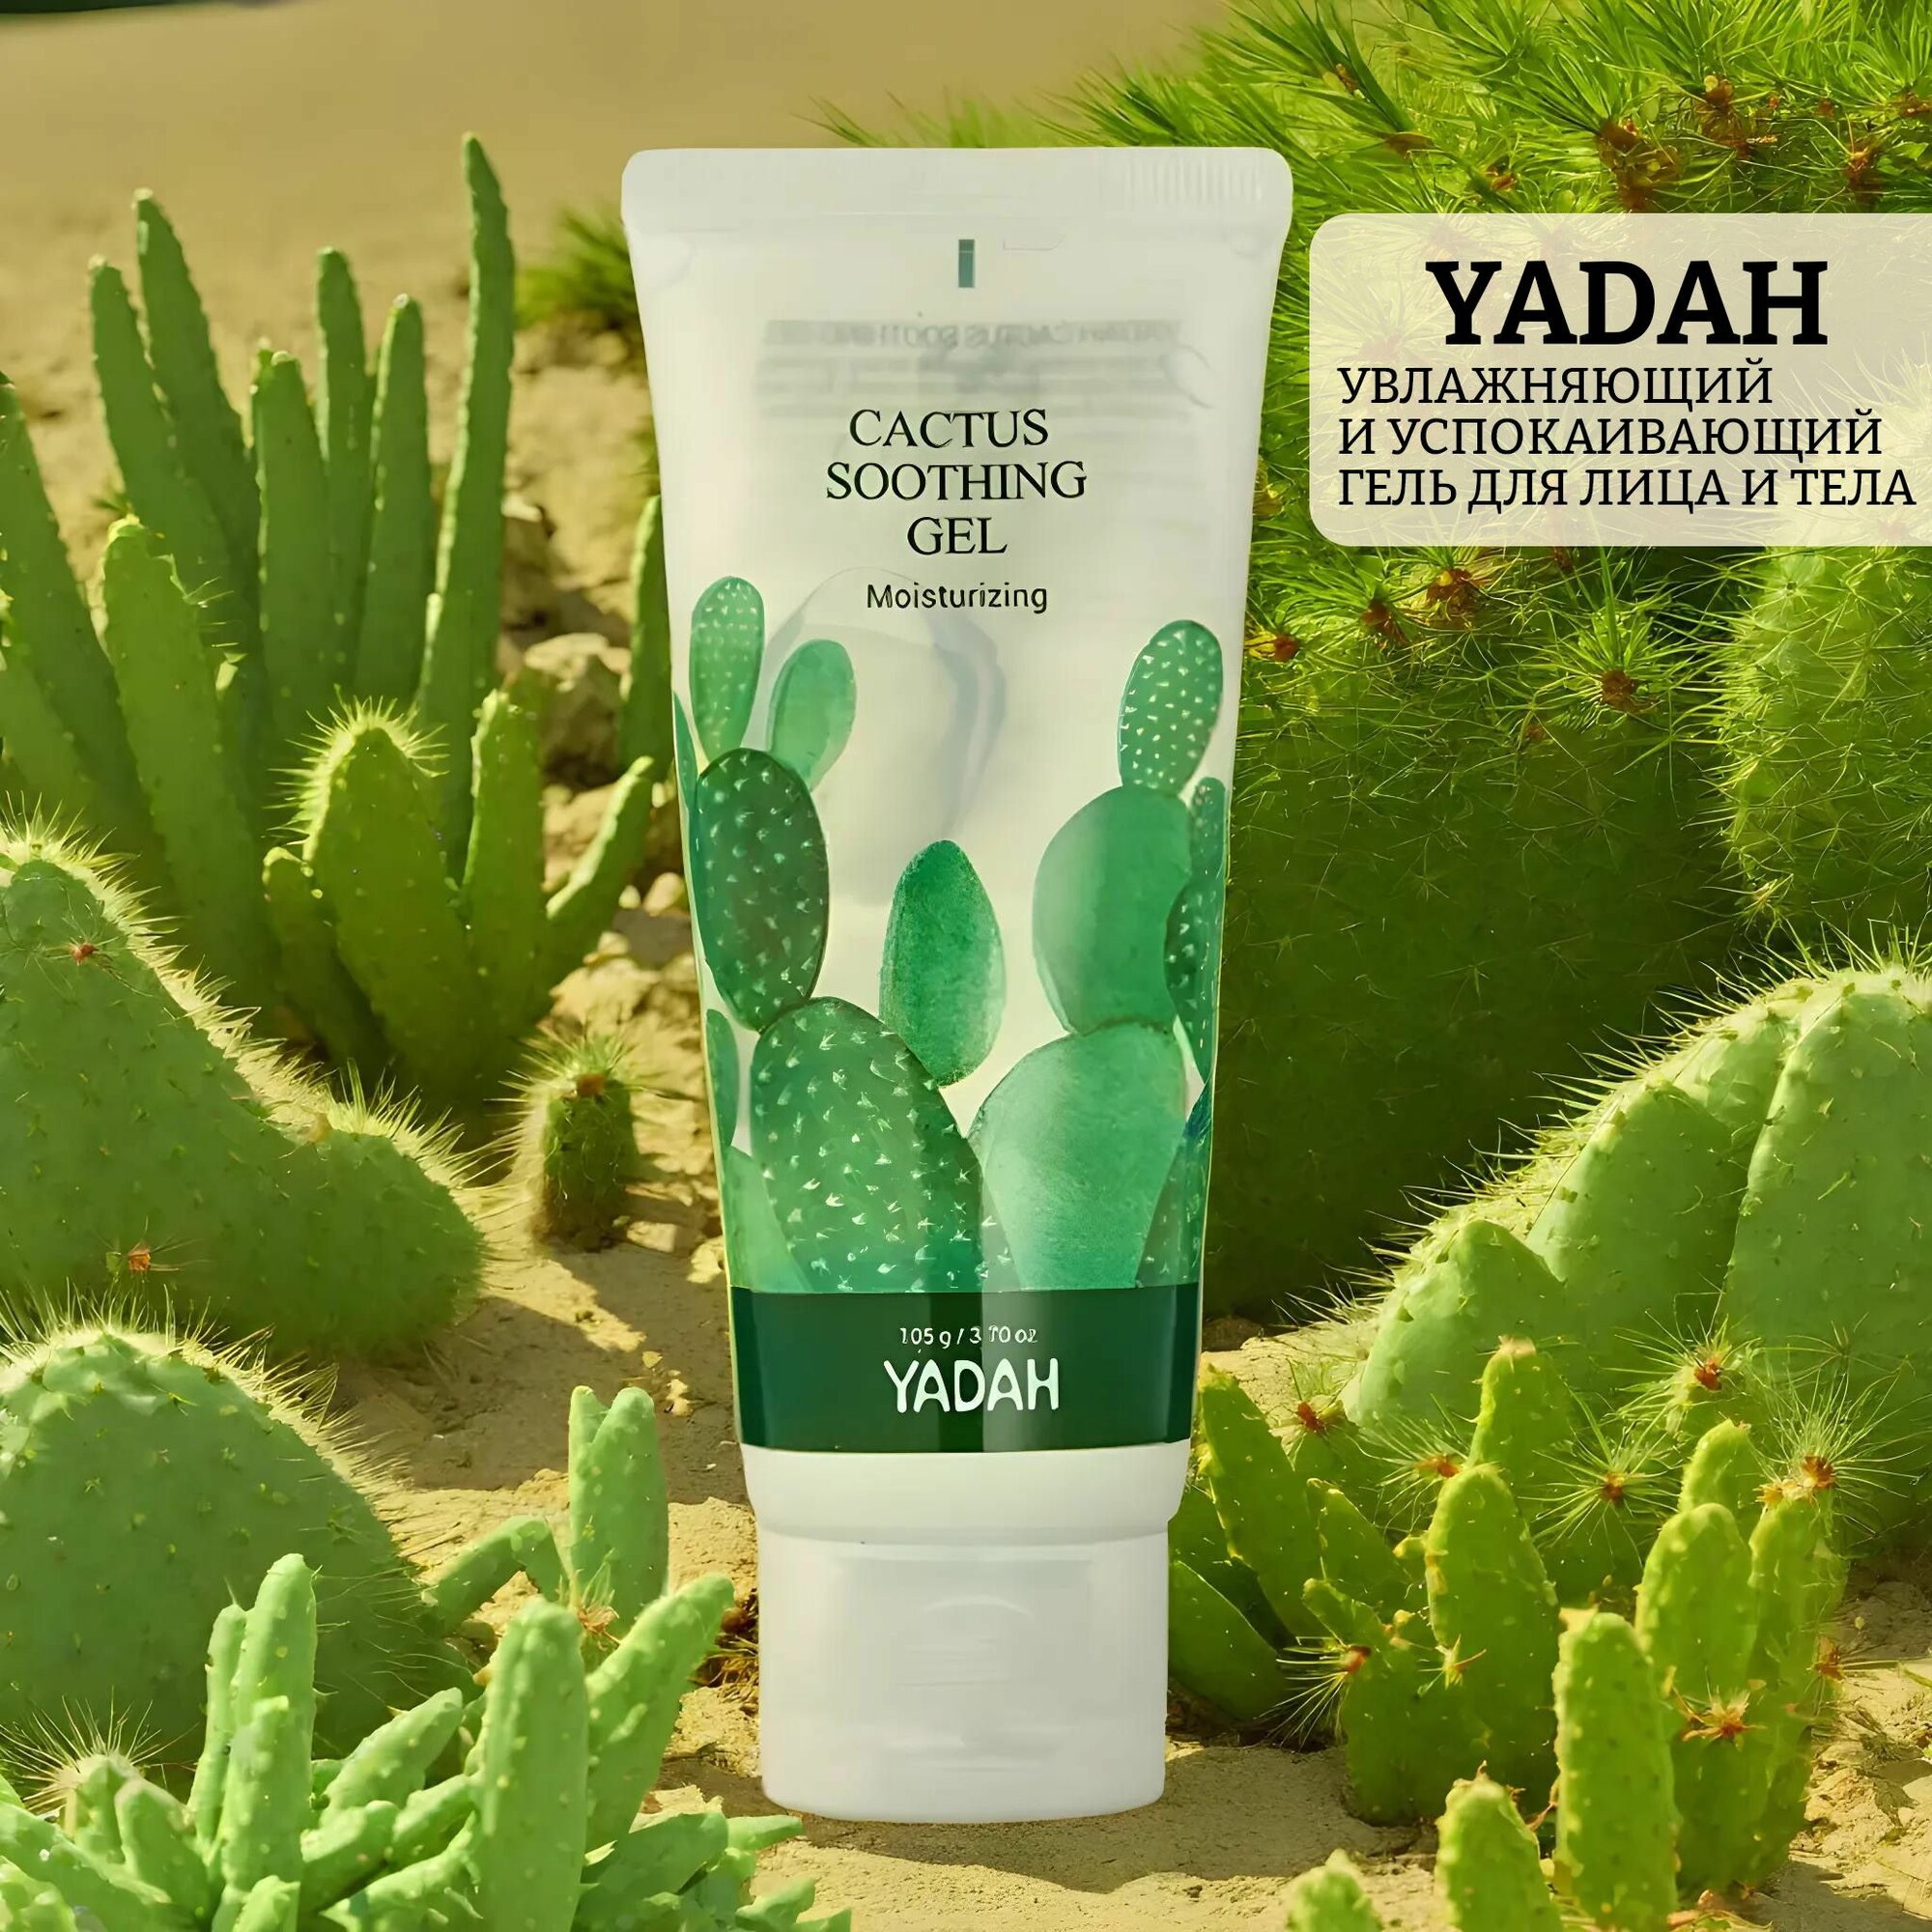 Увлажняющий и успокаивающий гель для лица и тела cactus soothing gel